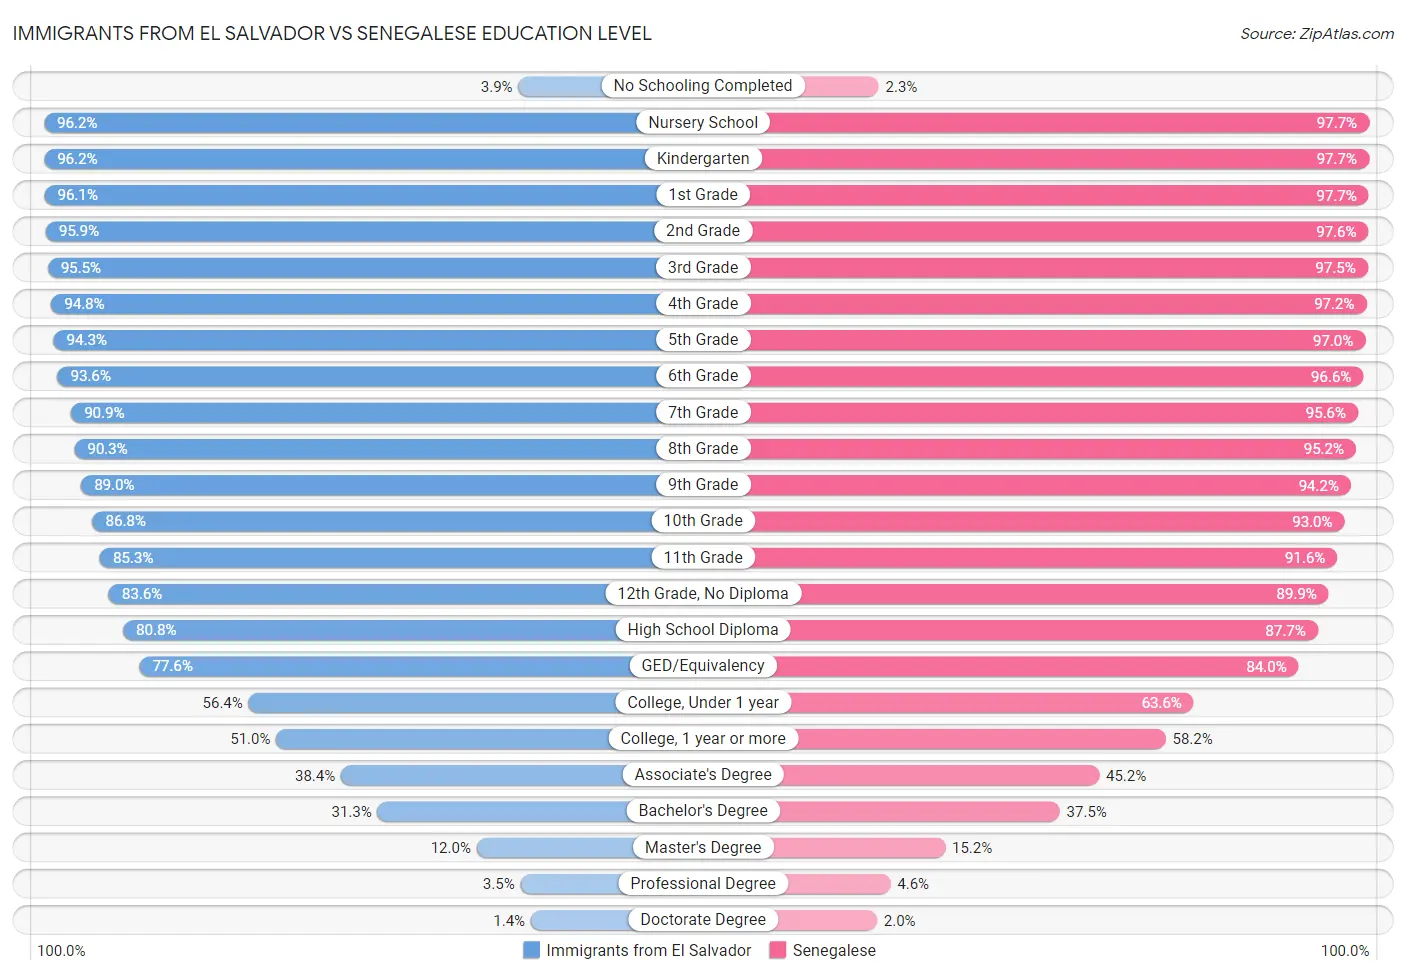 Immigrants from El Salvador vs Senegalese Education Level